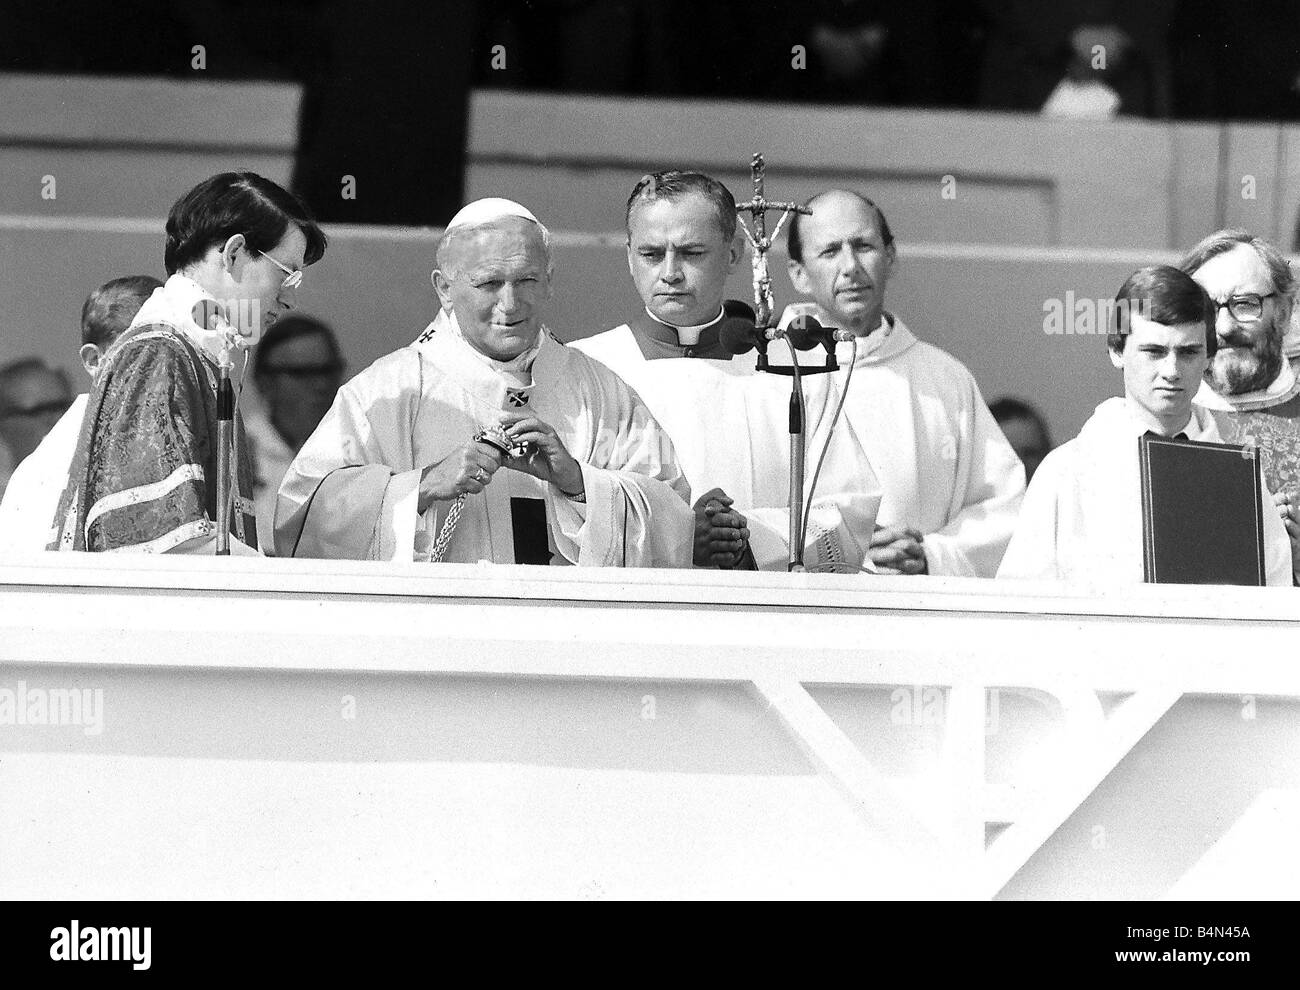 Papst John Paul II Visit Britain 1982 der Papst führt eine Open-Air-Messe im Wembley-Stadion während seines Besuchs in Großbritannien Stockfoto